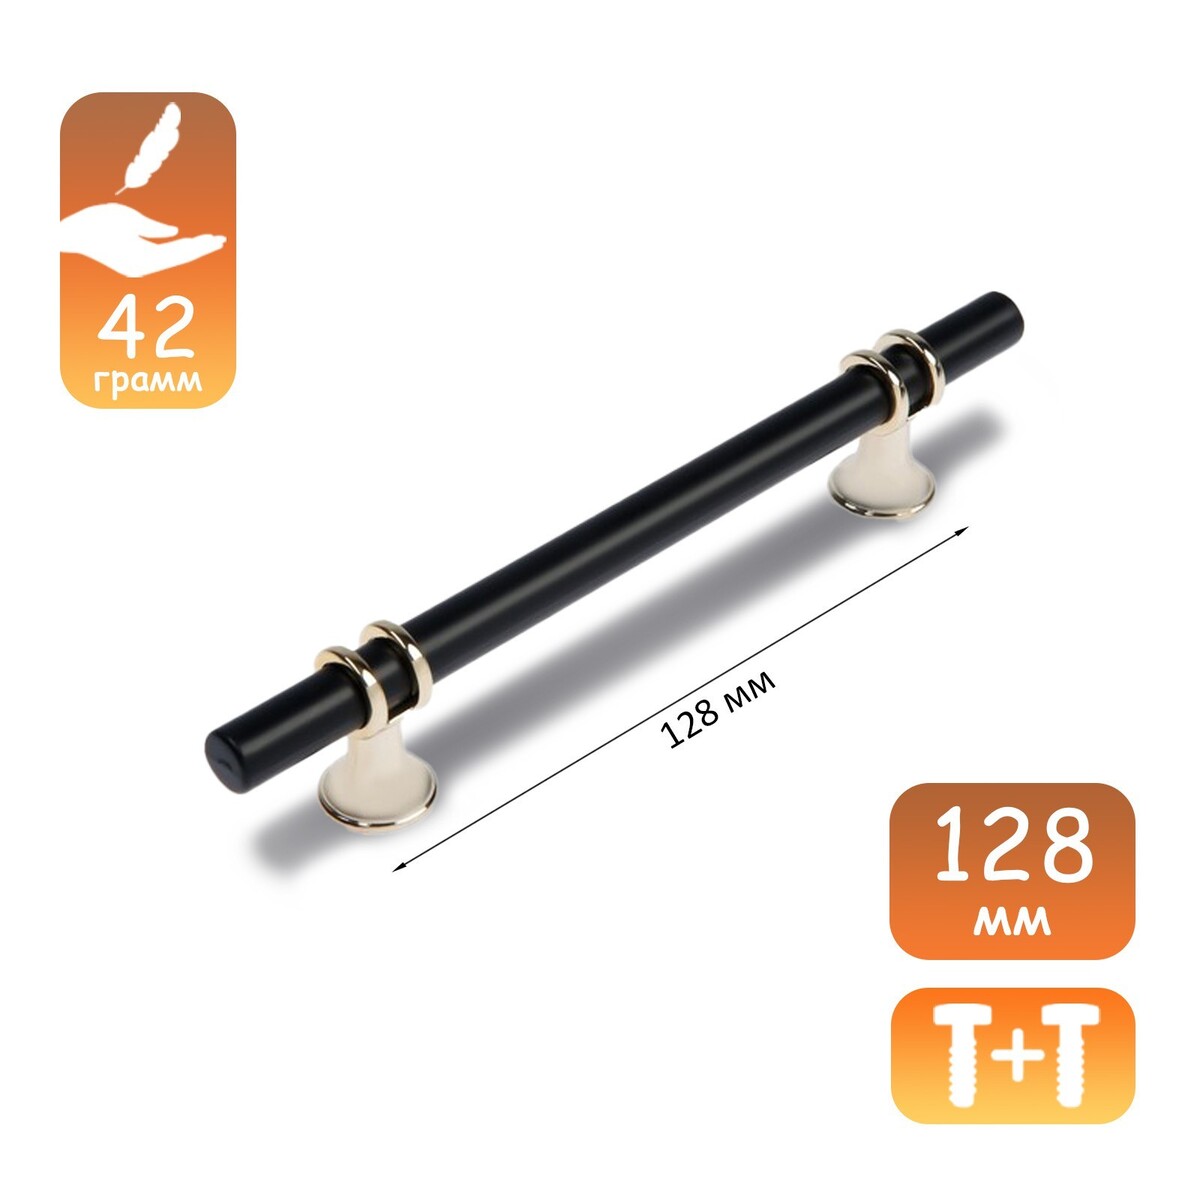 Ручка скоба cappio, м/о 128 мм, d=12 mm, пластик, цвет золото/черный ручка cappio м о 96 мм матовое золото